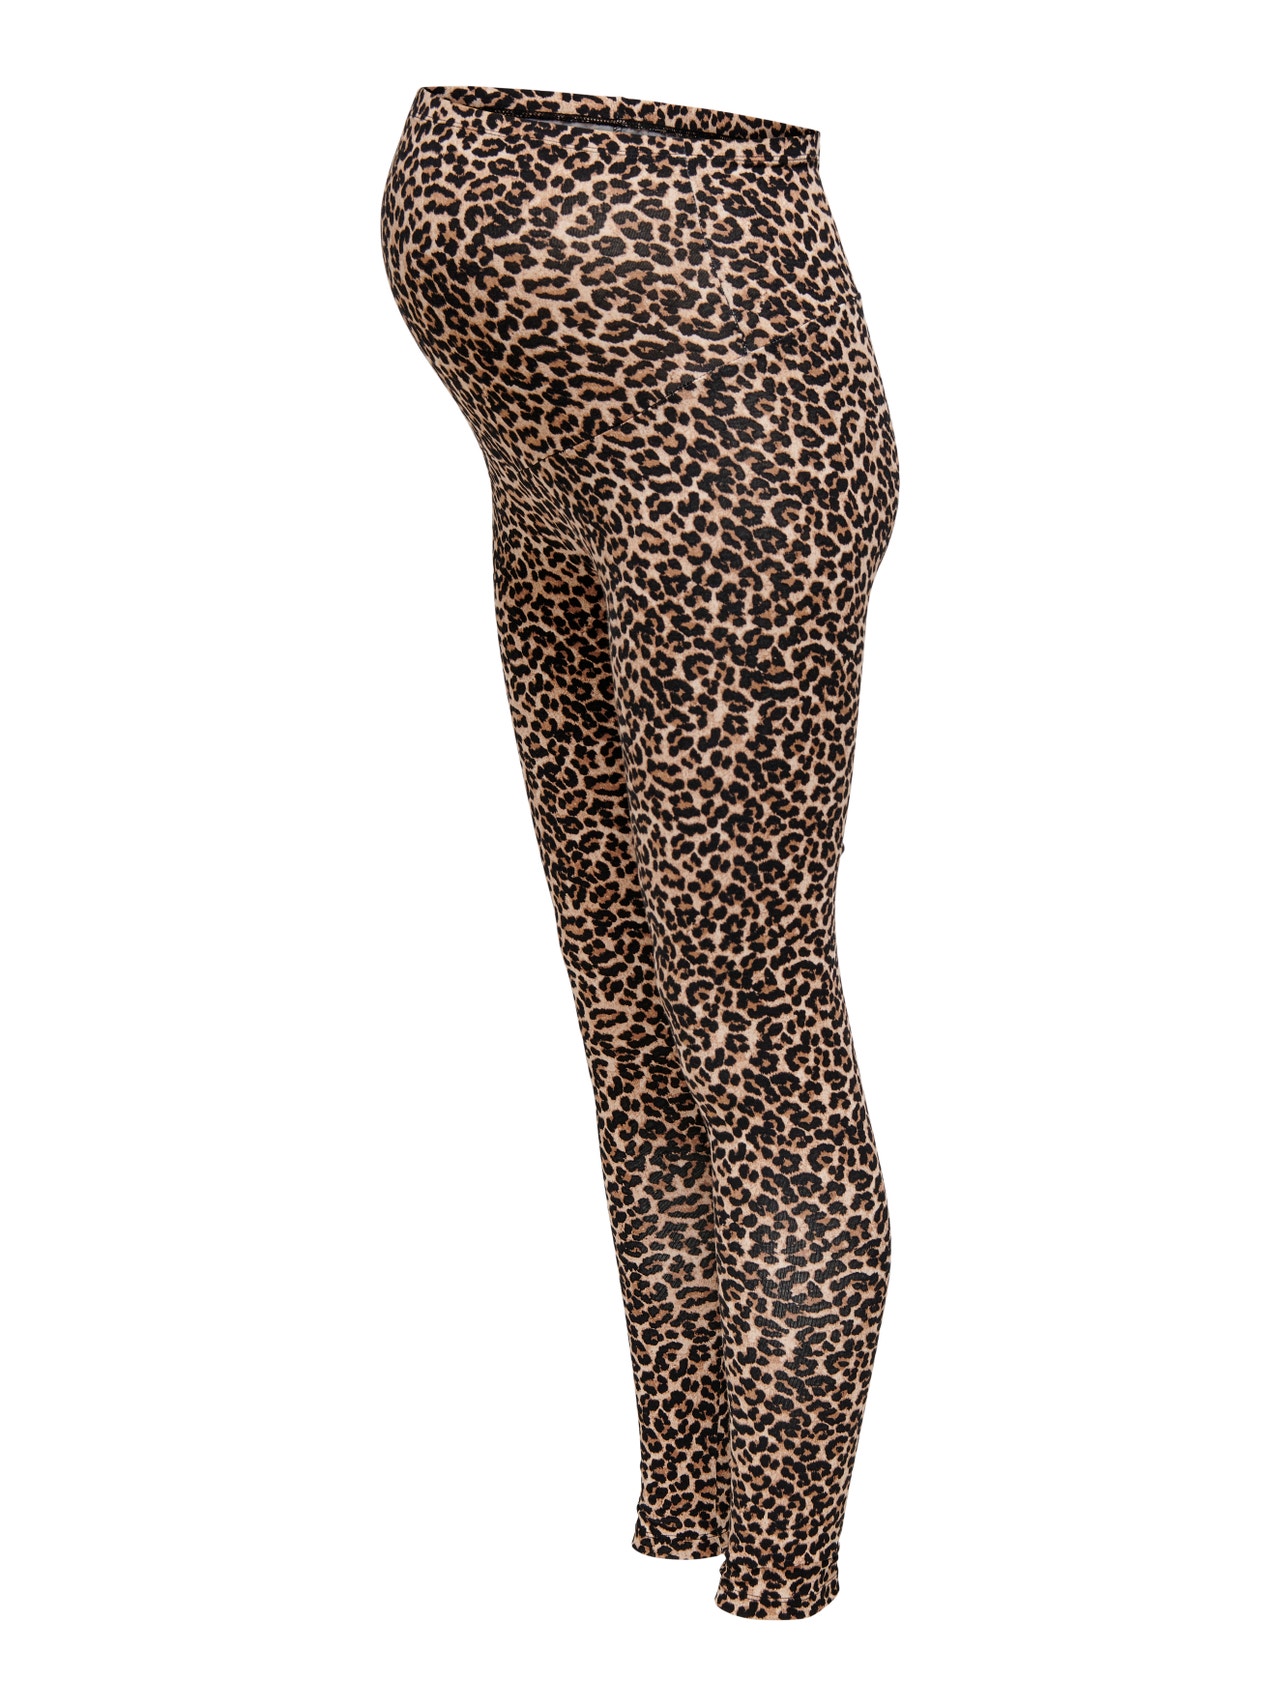 Mama leopard printed Leggings, Black